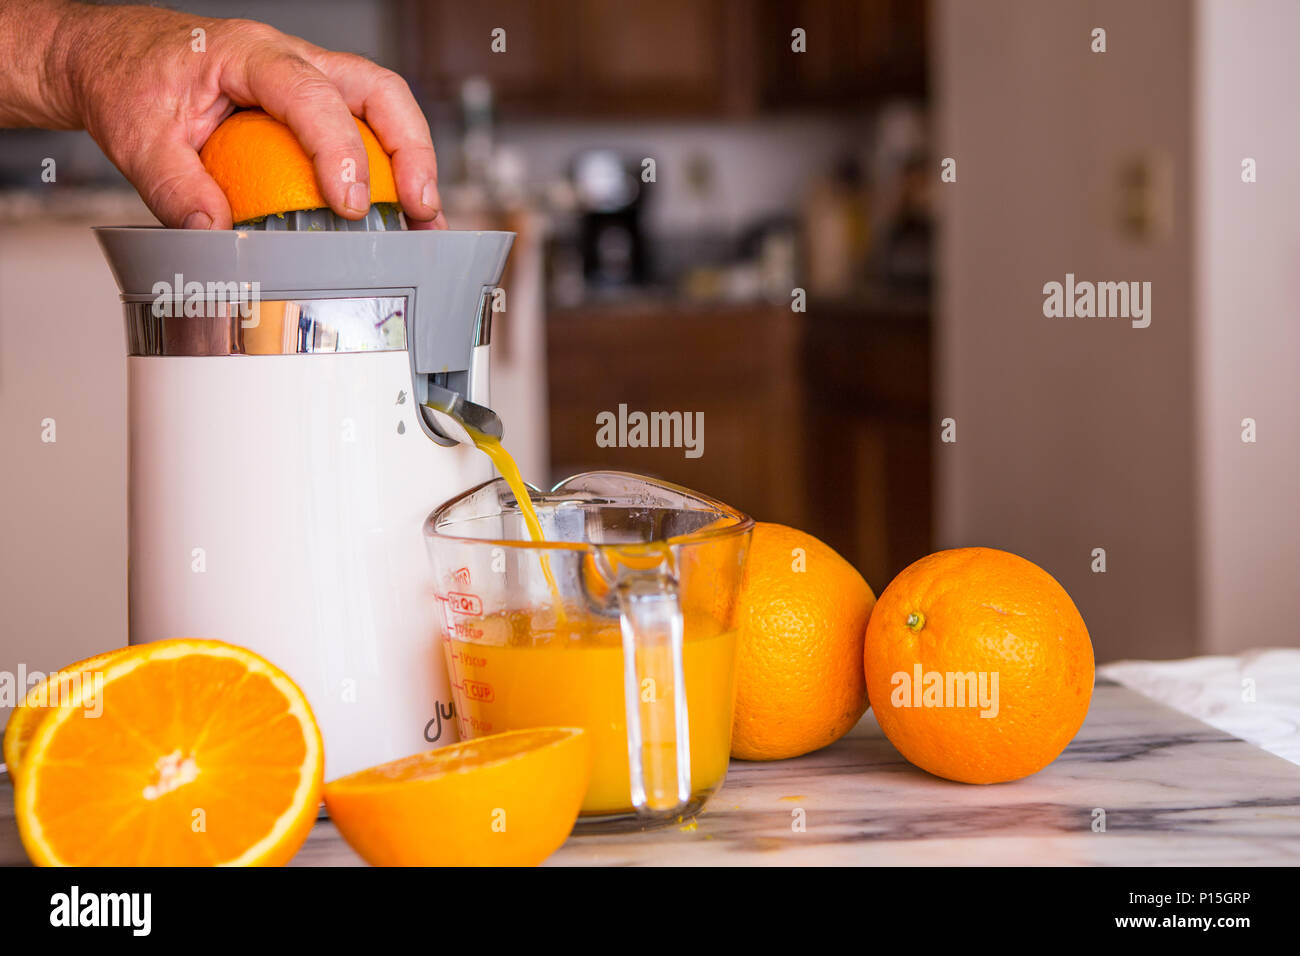 https://c8.alamy.com/compes/p15grp/mesa-naranja-electrico-y-exprimidor-de-citricos-en-un-hogar-cocina-con-todo-fresco-y-cortar-las-naranjas-p15grp.jpg